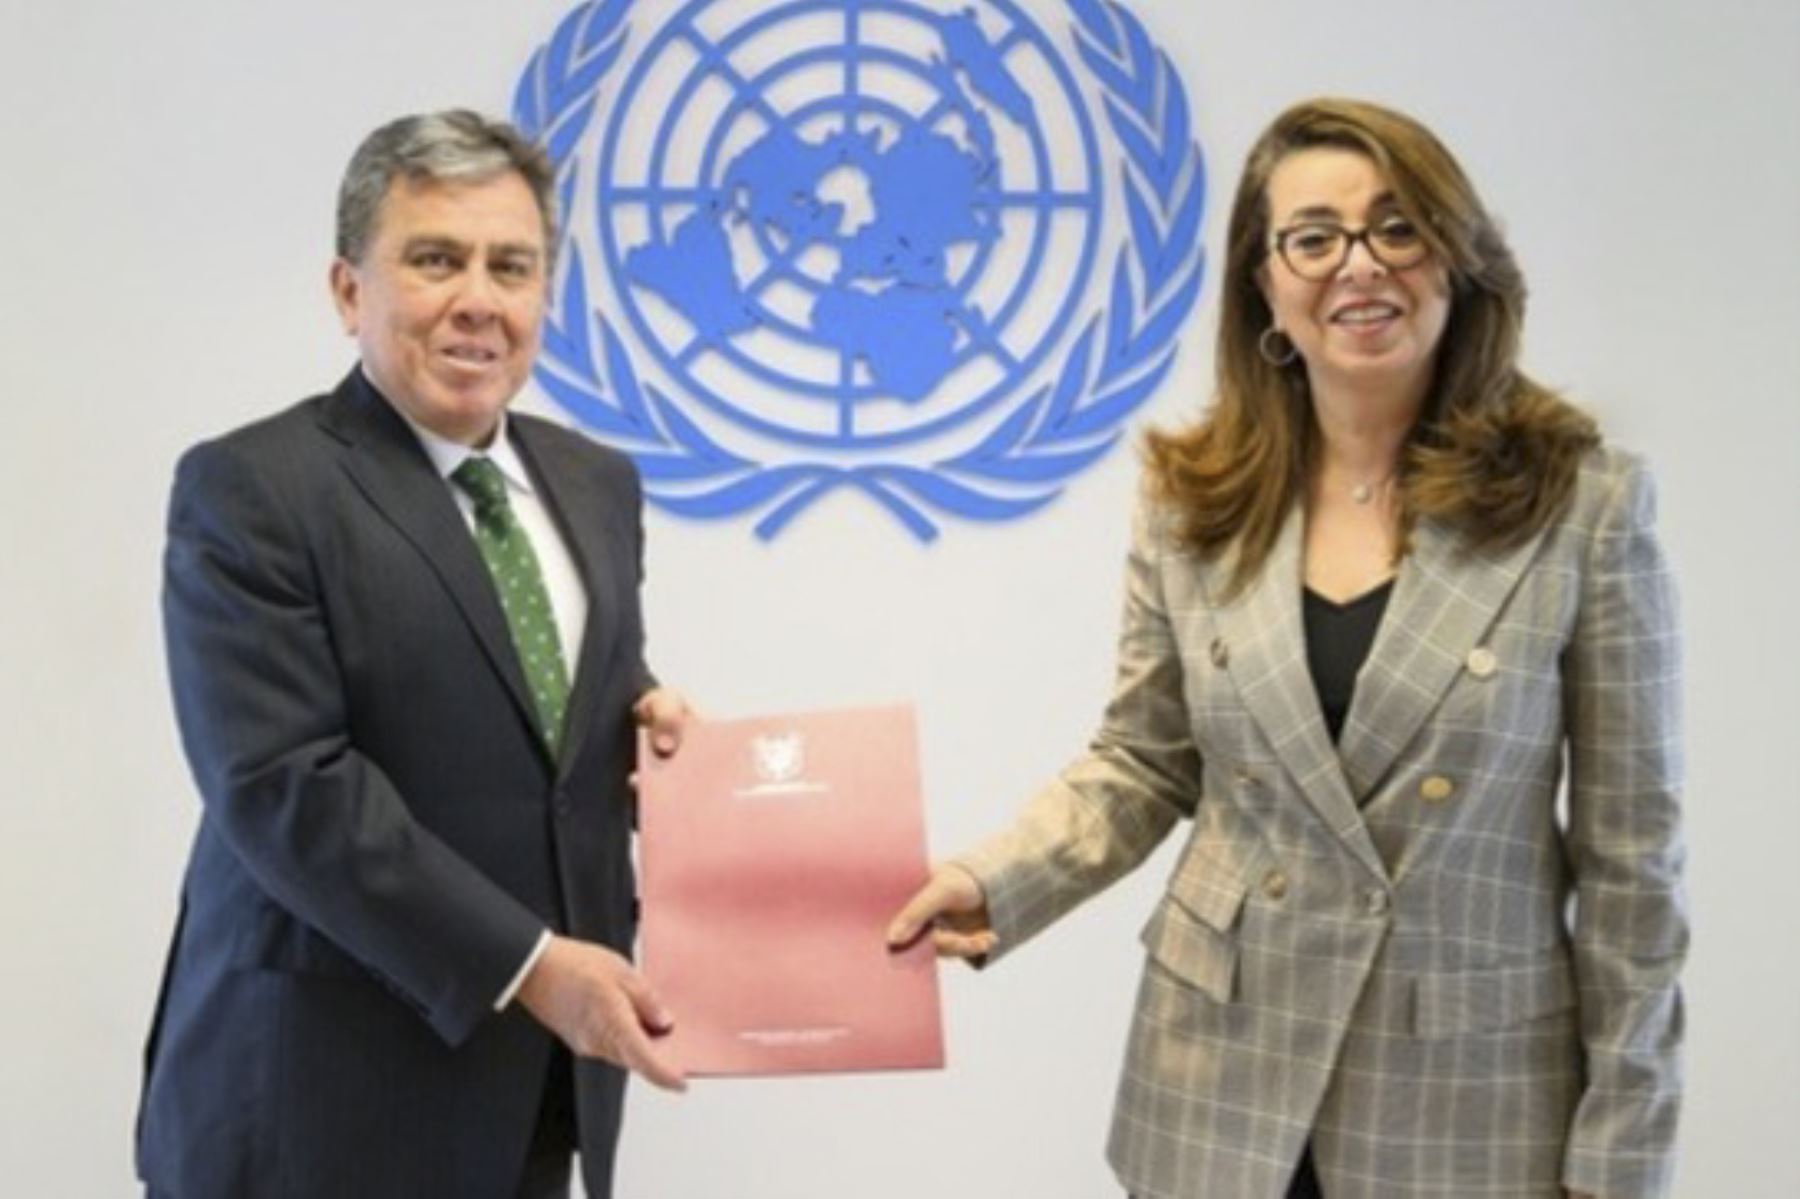 Representante Permanente del Perú presenta cartas credenciales ante las Naciones Unidas